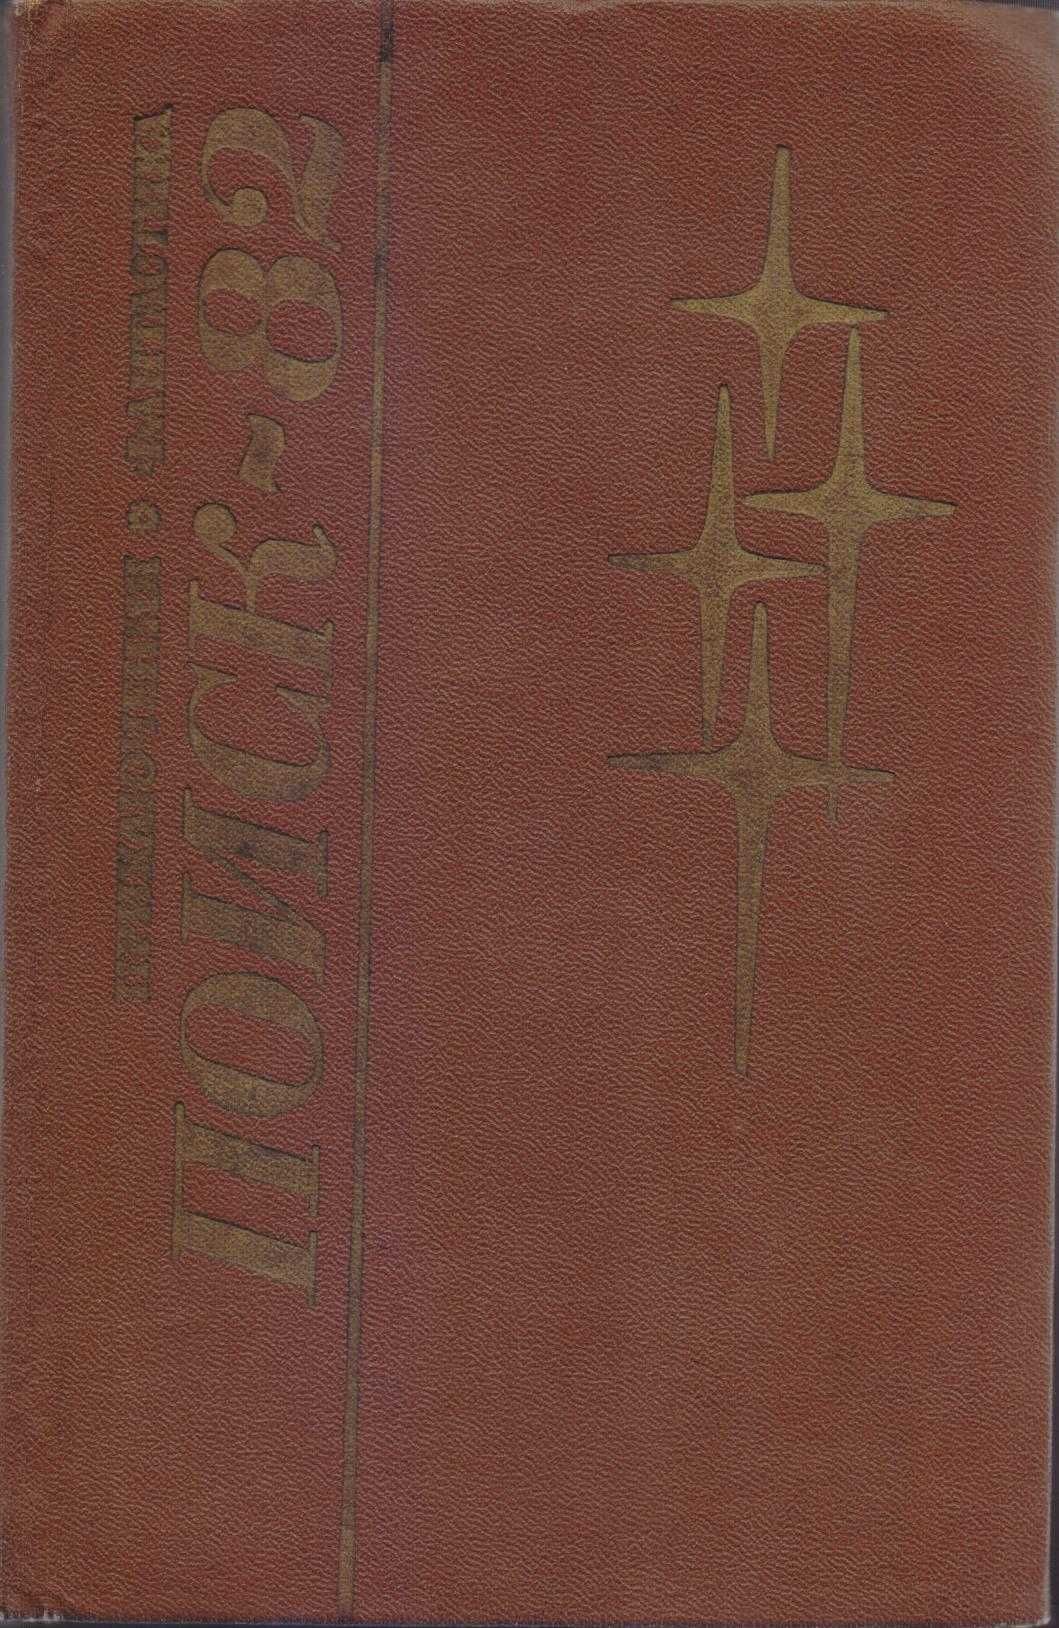 Альманах Поиск 81, 82, 83, ежегодник, сборник фантастики и приключений